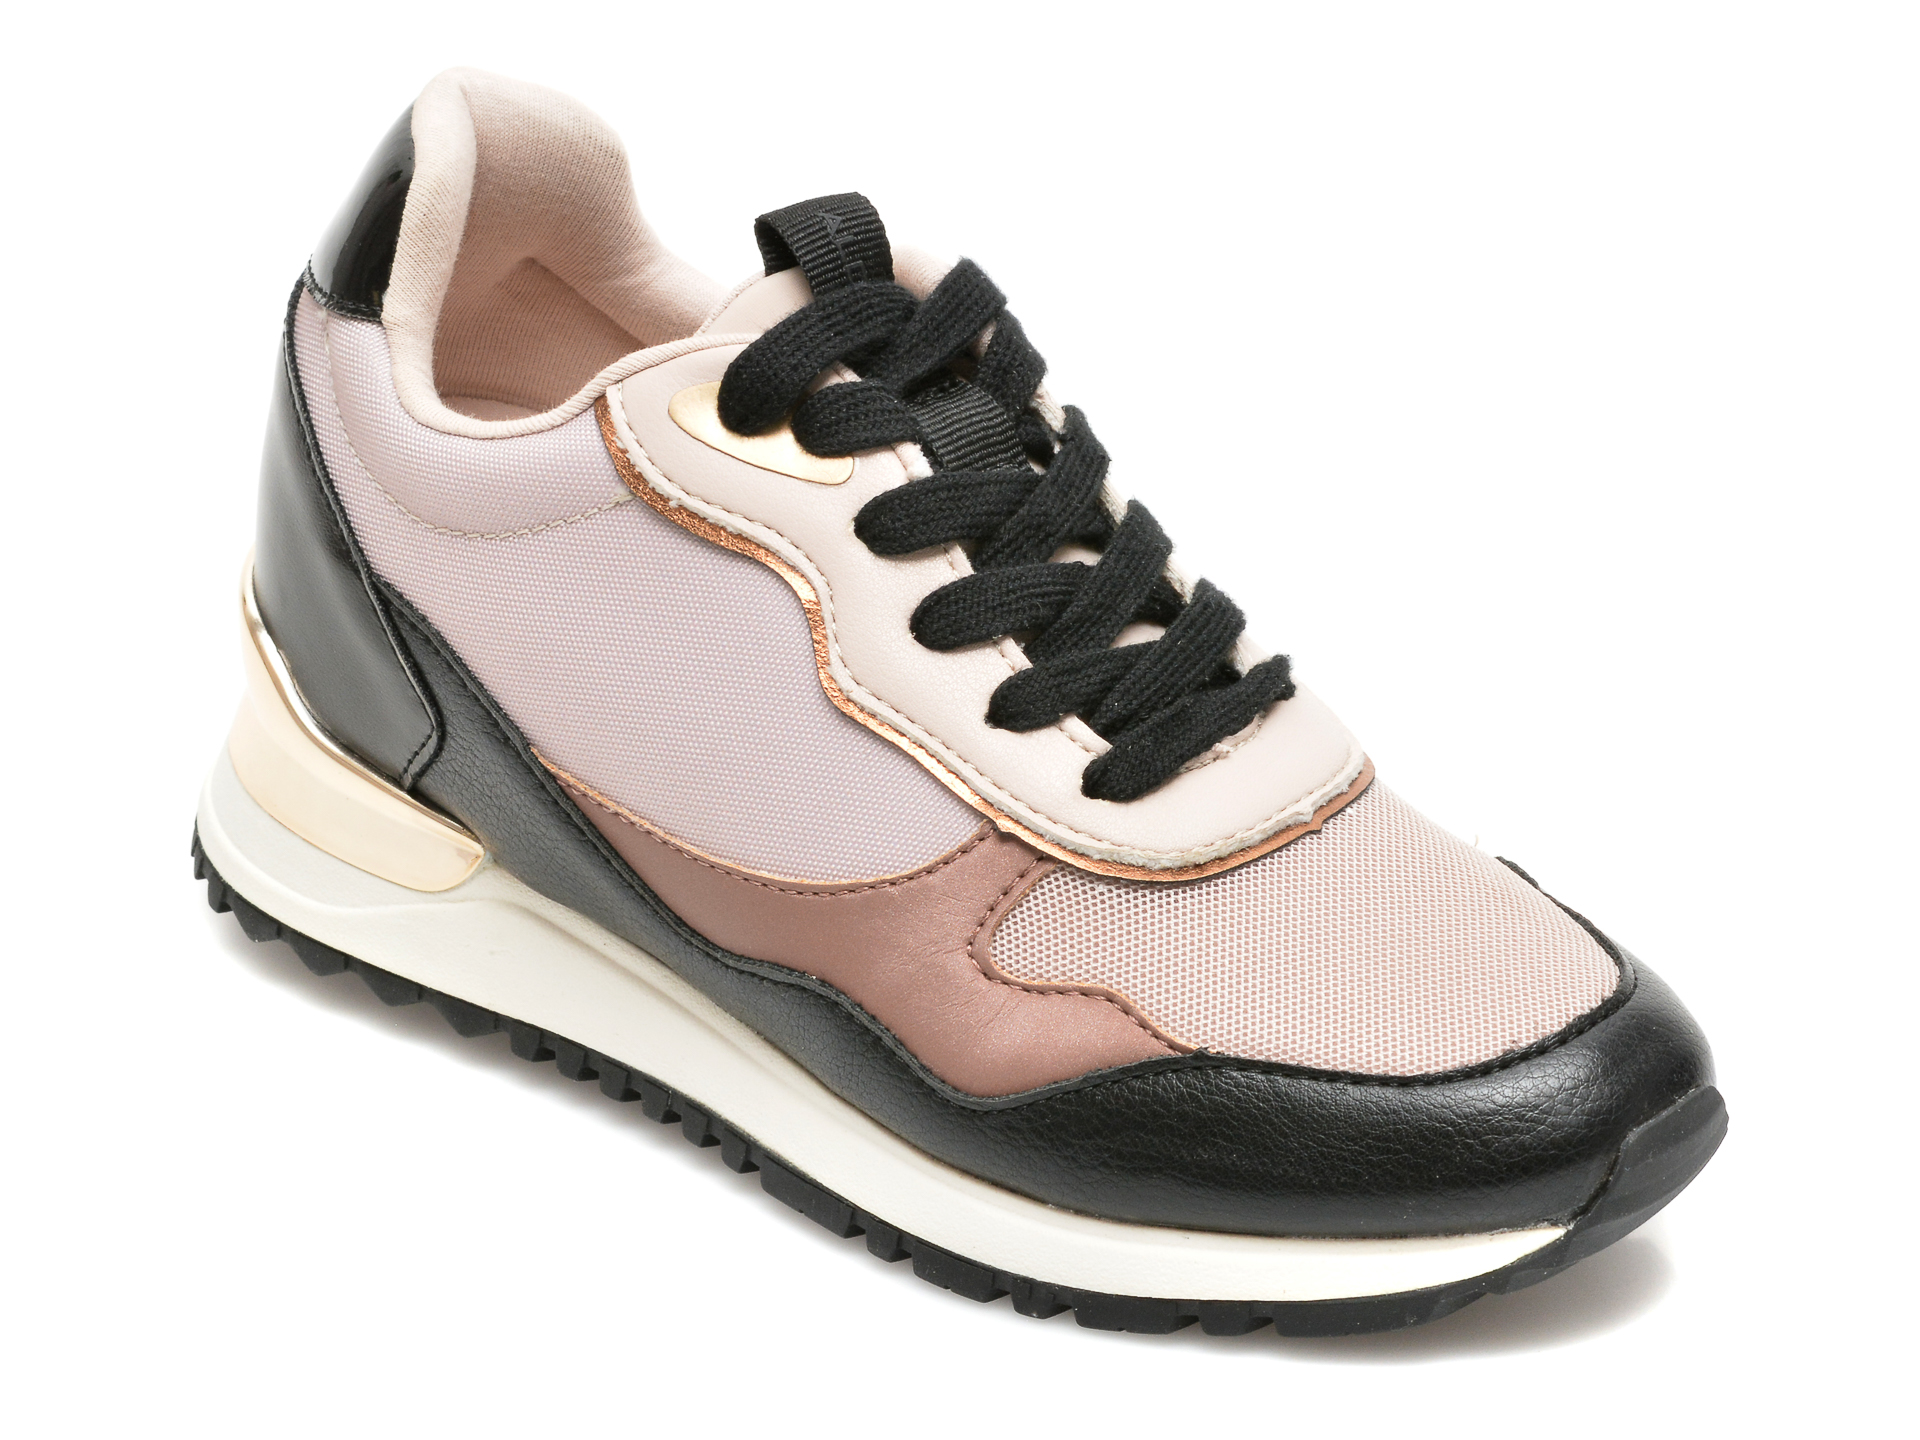 Pantofi sport ALDO bej, AREADITH680, din material textil si piele ecologica Aldo imagine reduceri